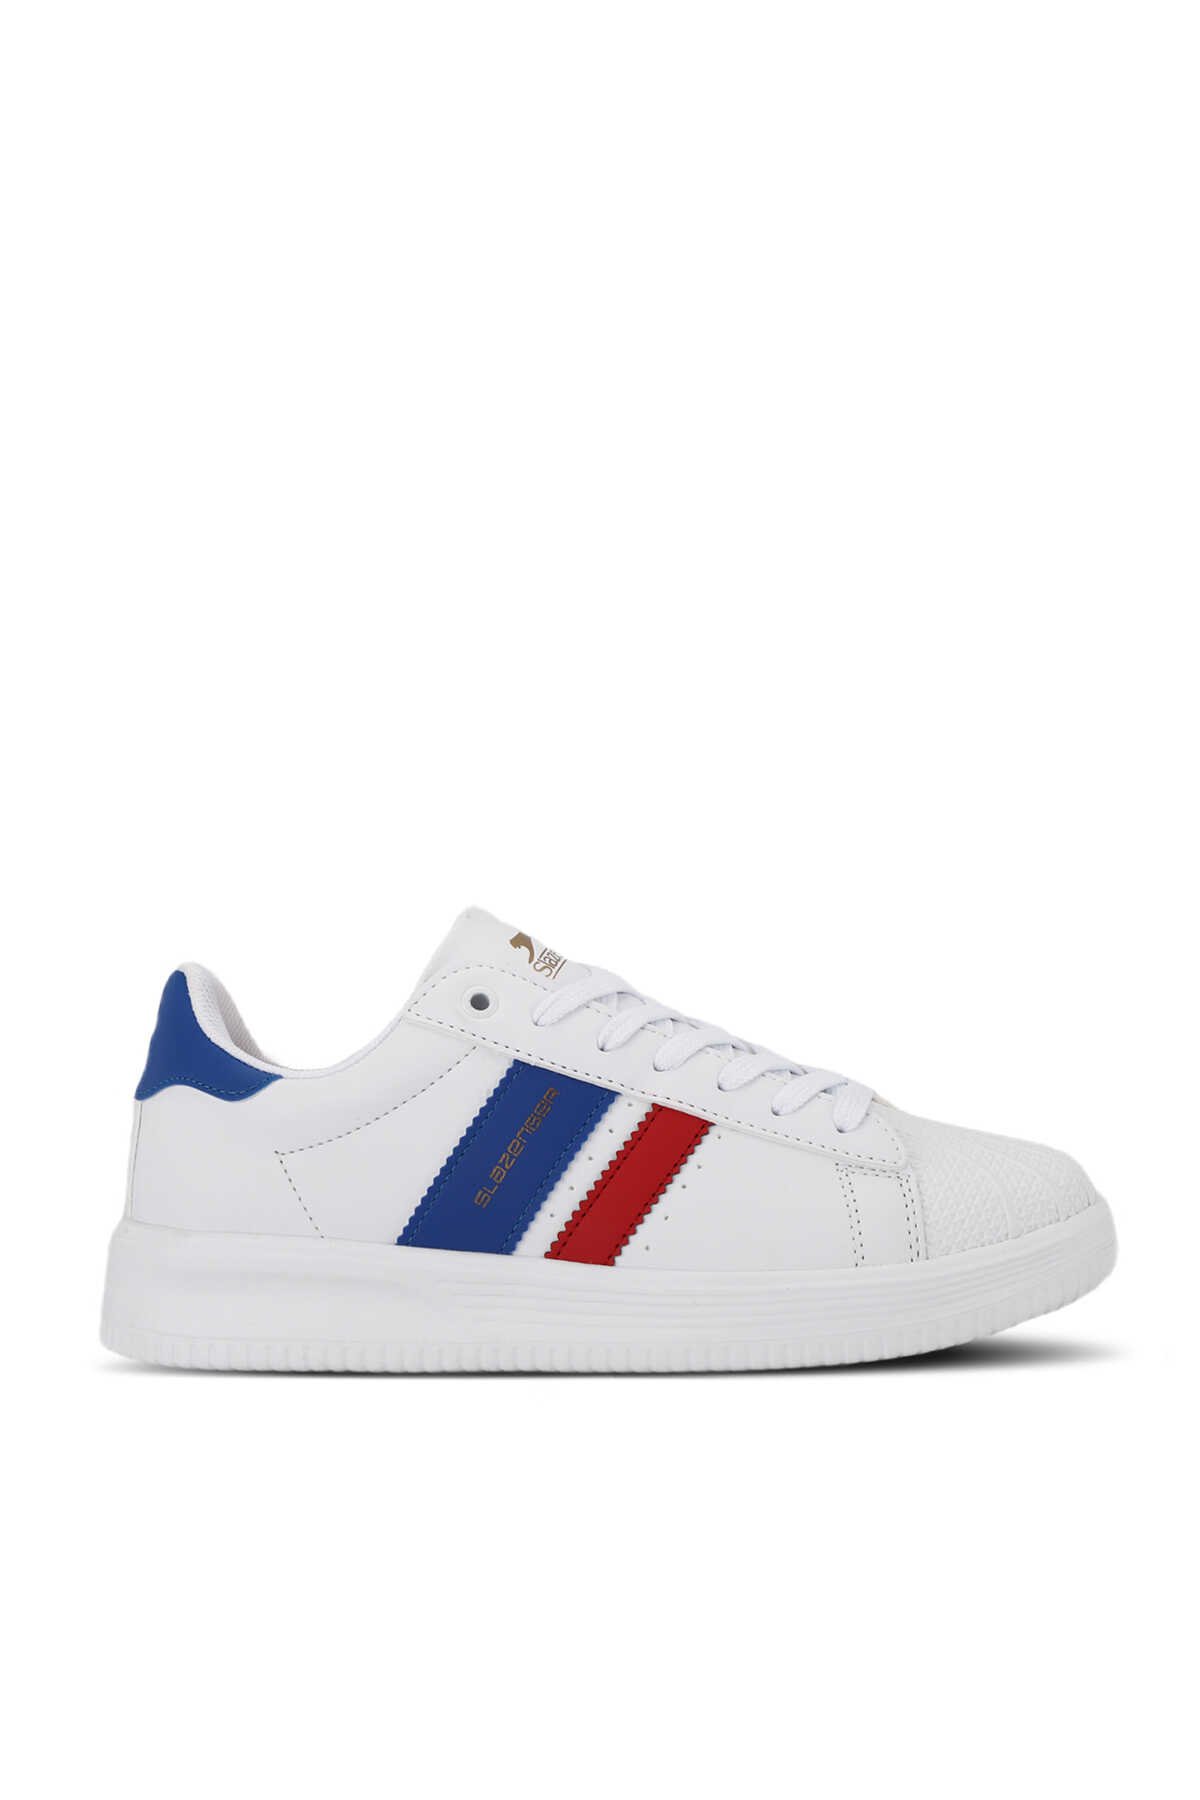 Slazenger - ZENO Sneaker Kadın Ayakkabı Beyaz / Saks Mavi